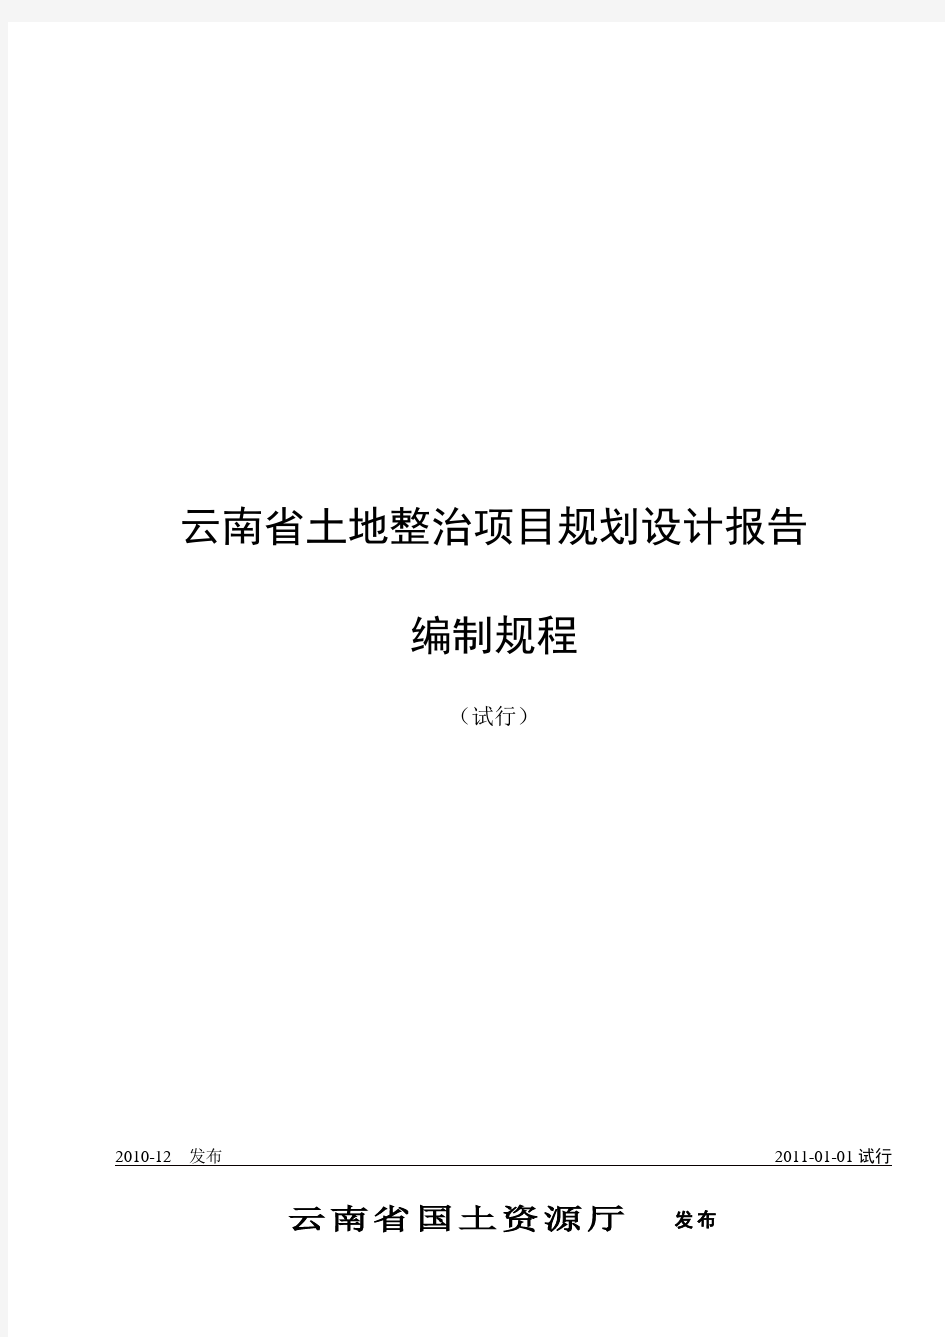 《云南省土地整治项目规划设计报告编制规程(试行)》2011